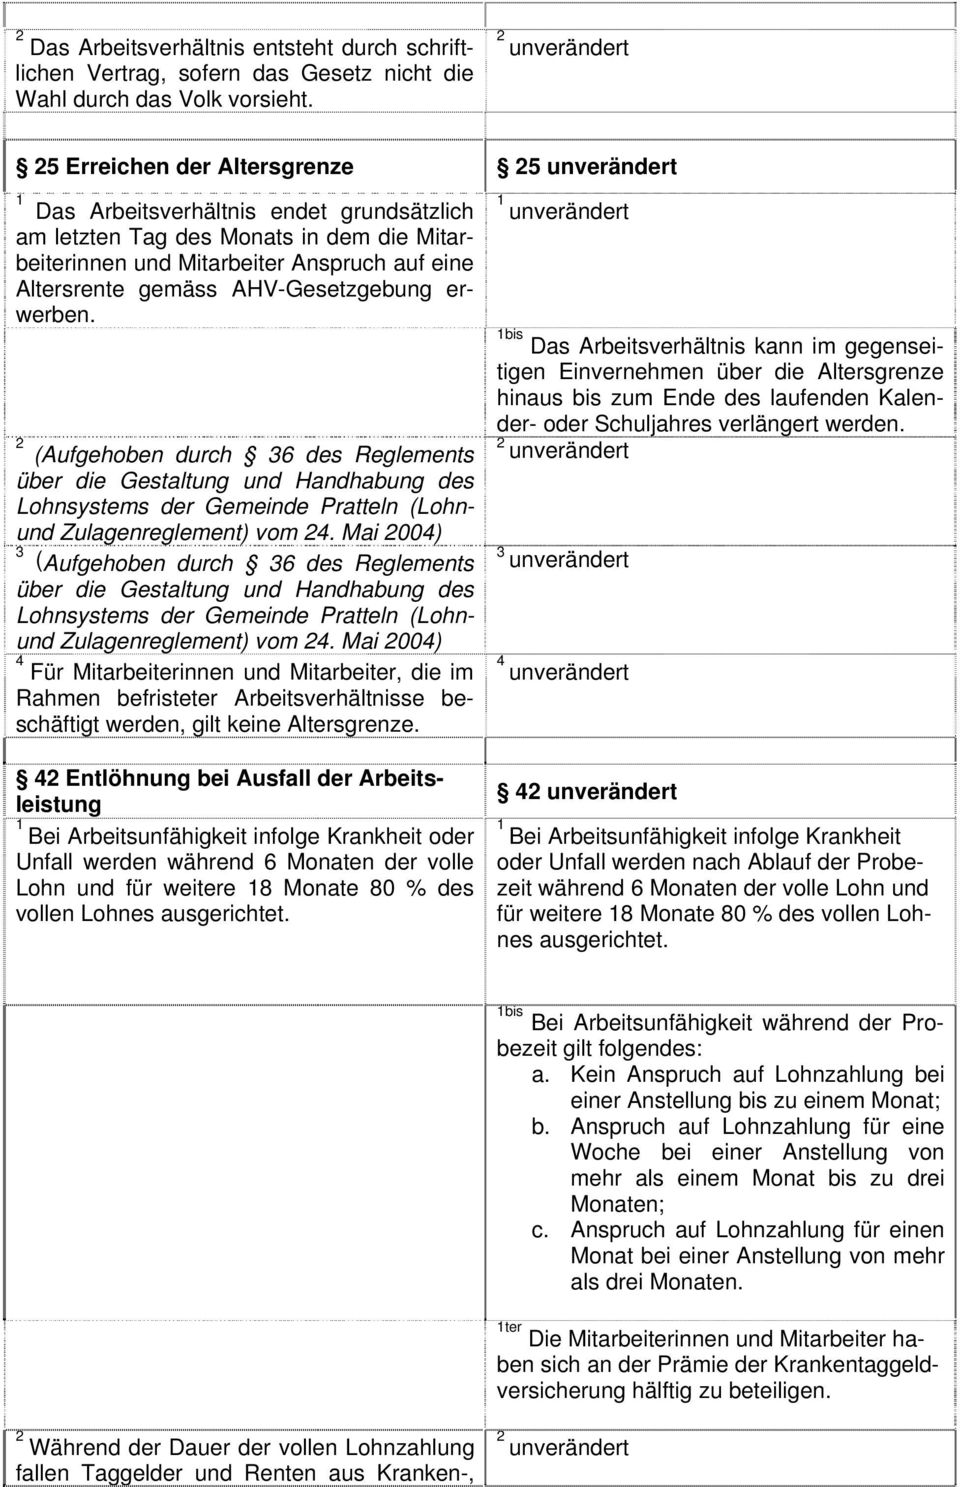 erwerben. (Aufgehoben durch 6 des Reglements über die Gestaltung und Handhabung des Lohnsystems der Gemeinde Pratteln (Lohnund Zulagenreglement) vom.